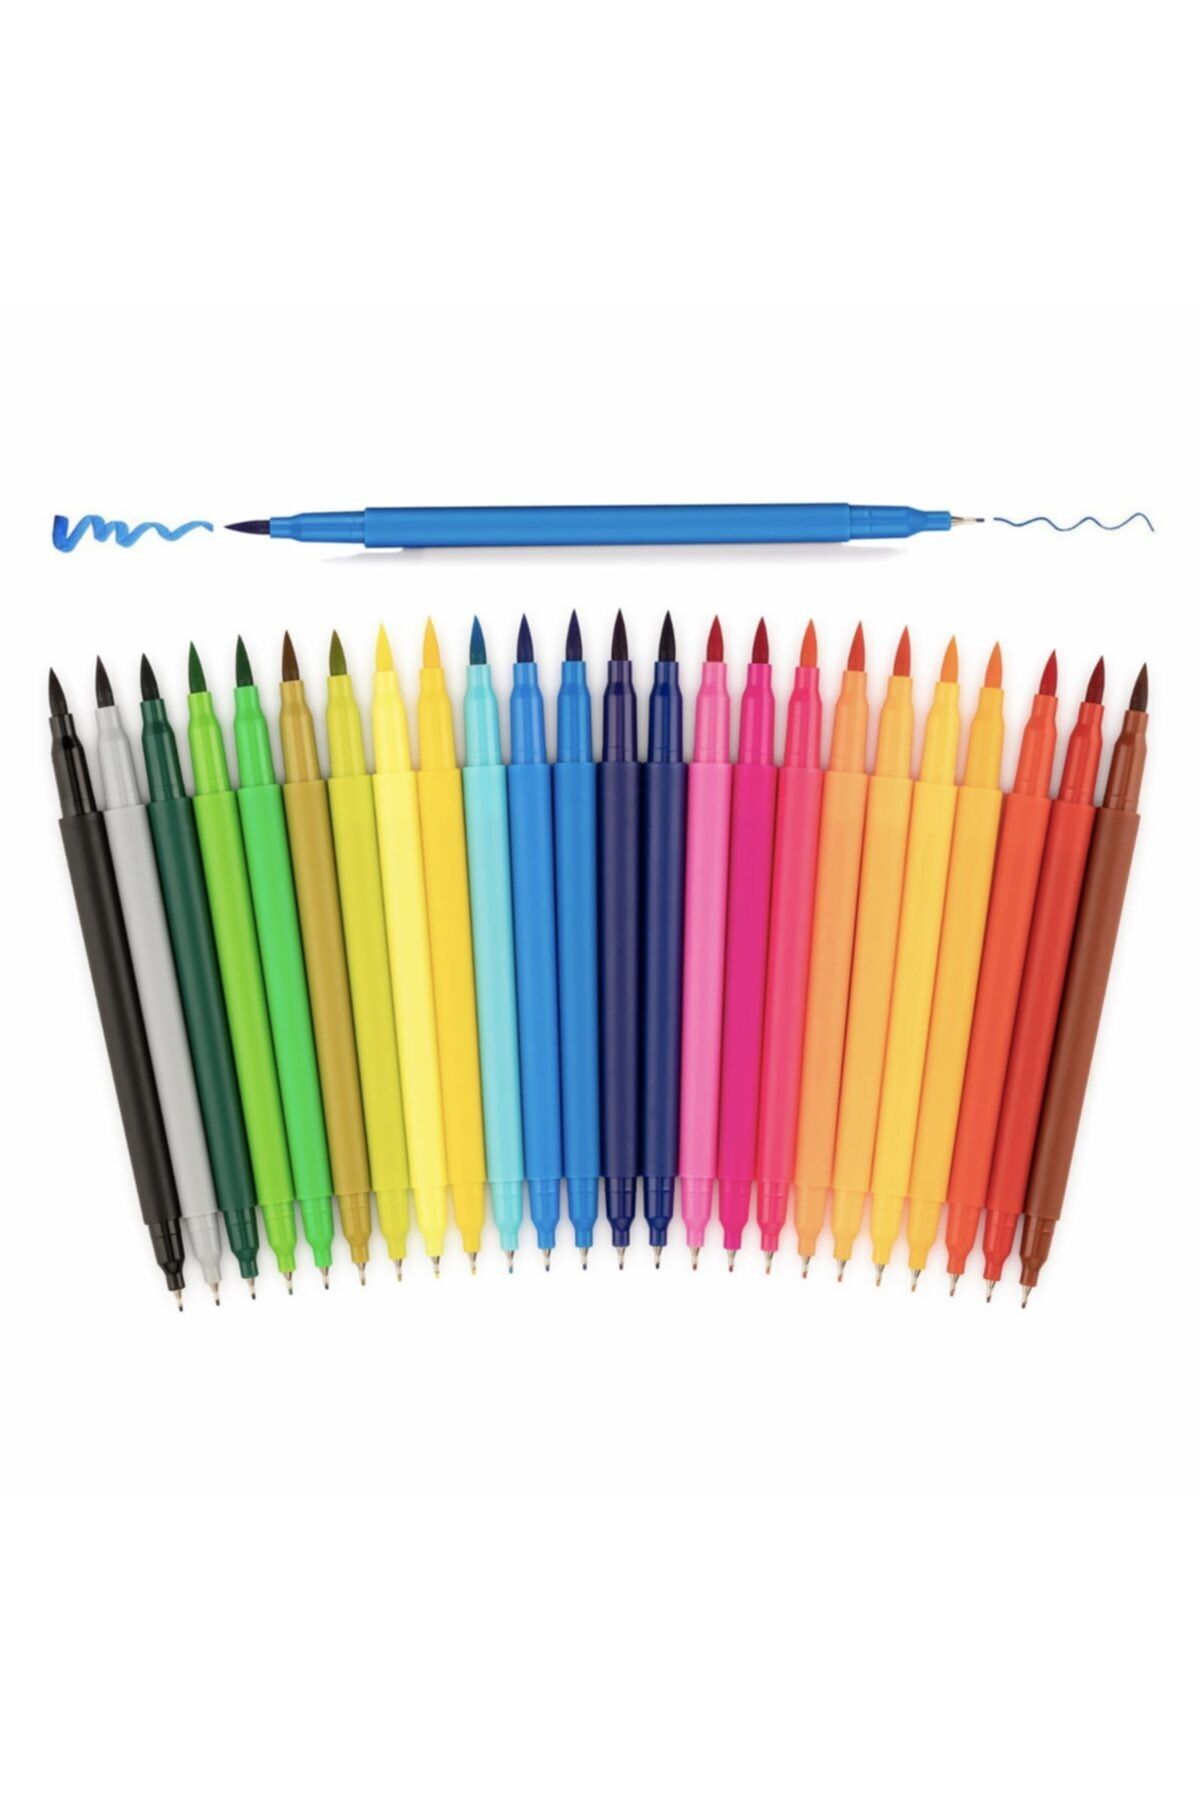 Artzone Çift Taraflı Fırça Uçlu Renklendirme Kalem Seti - 24 Renk